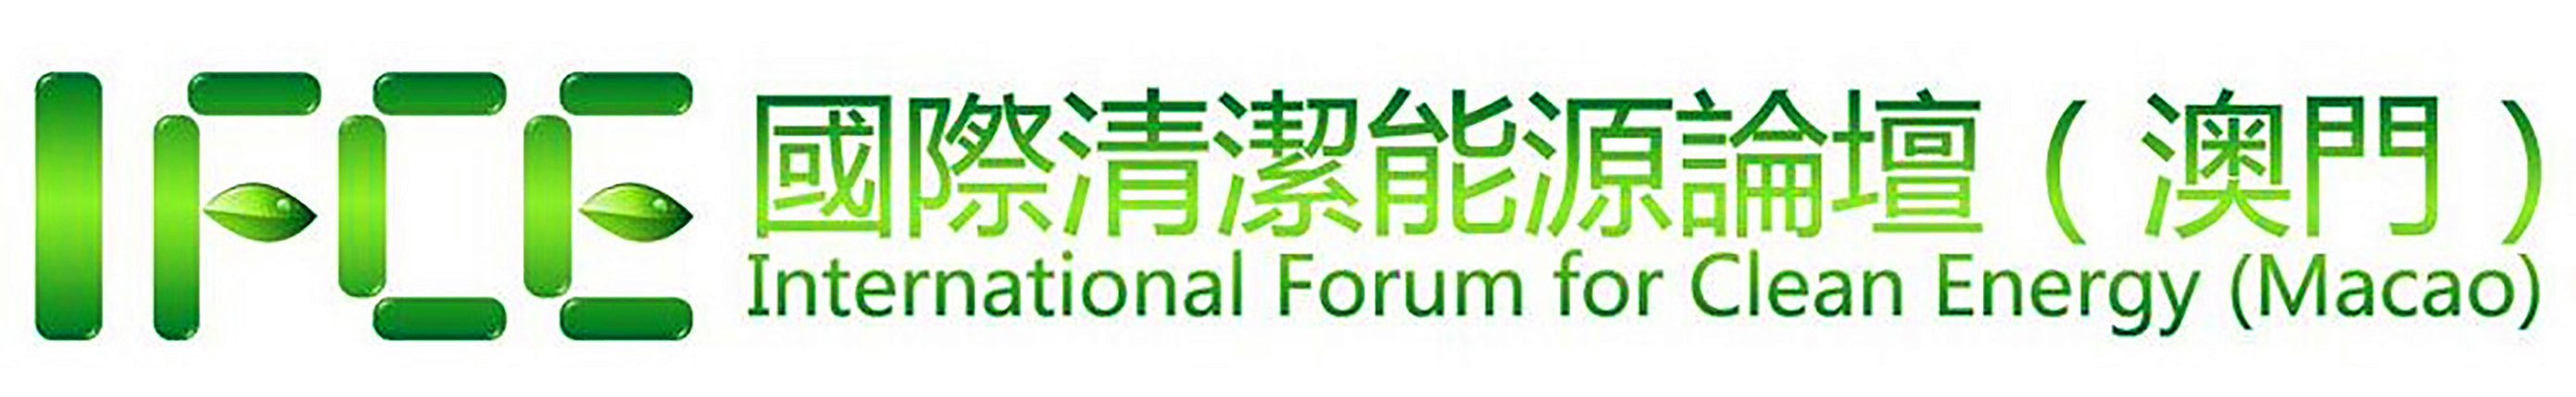 国际清洁能源论坛-澳门logo长版